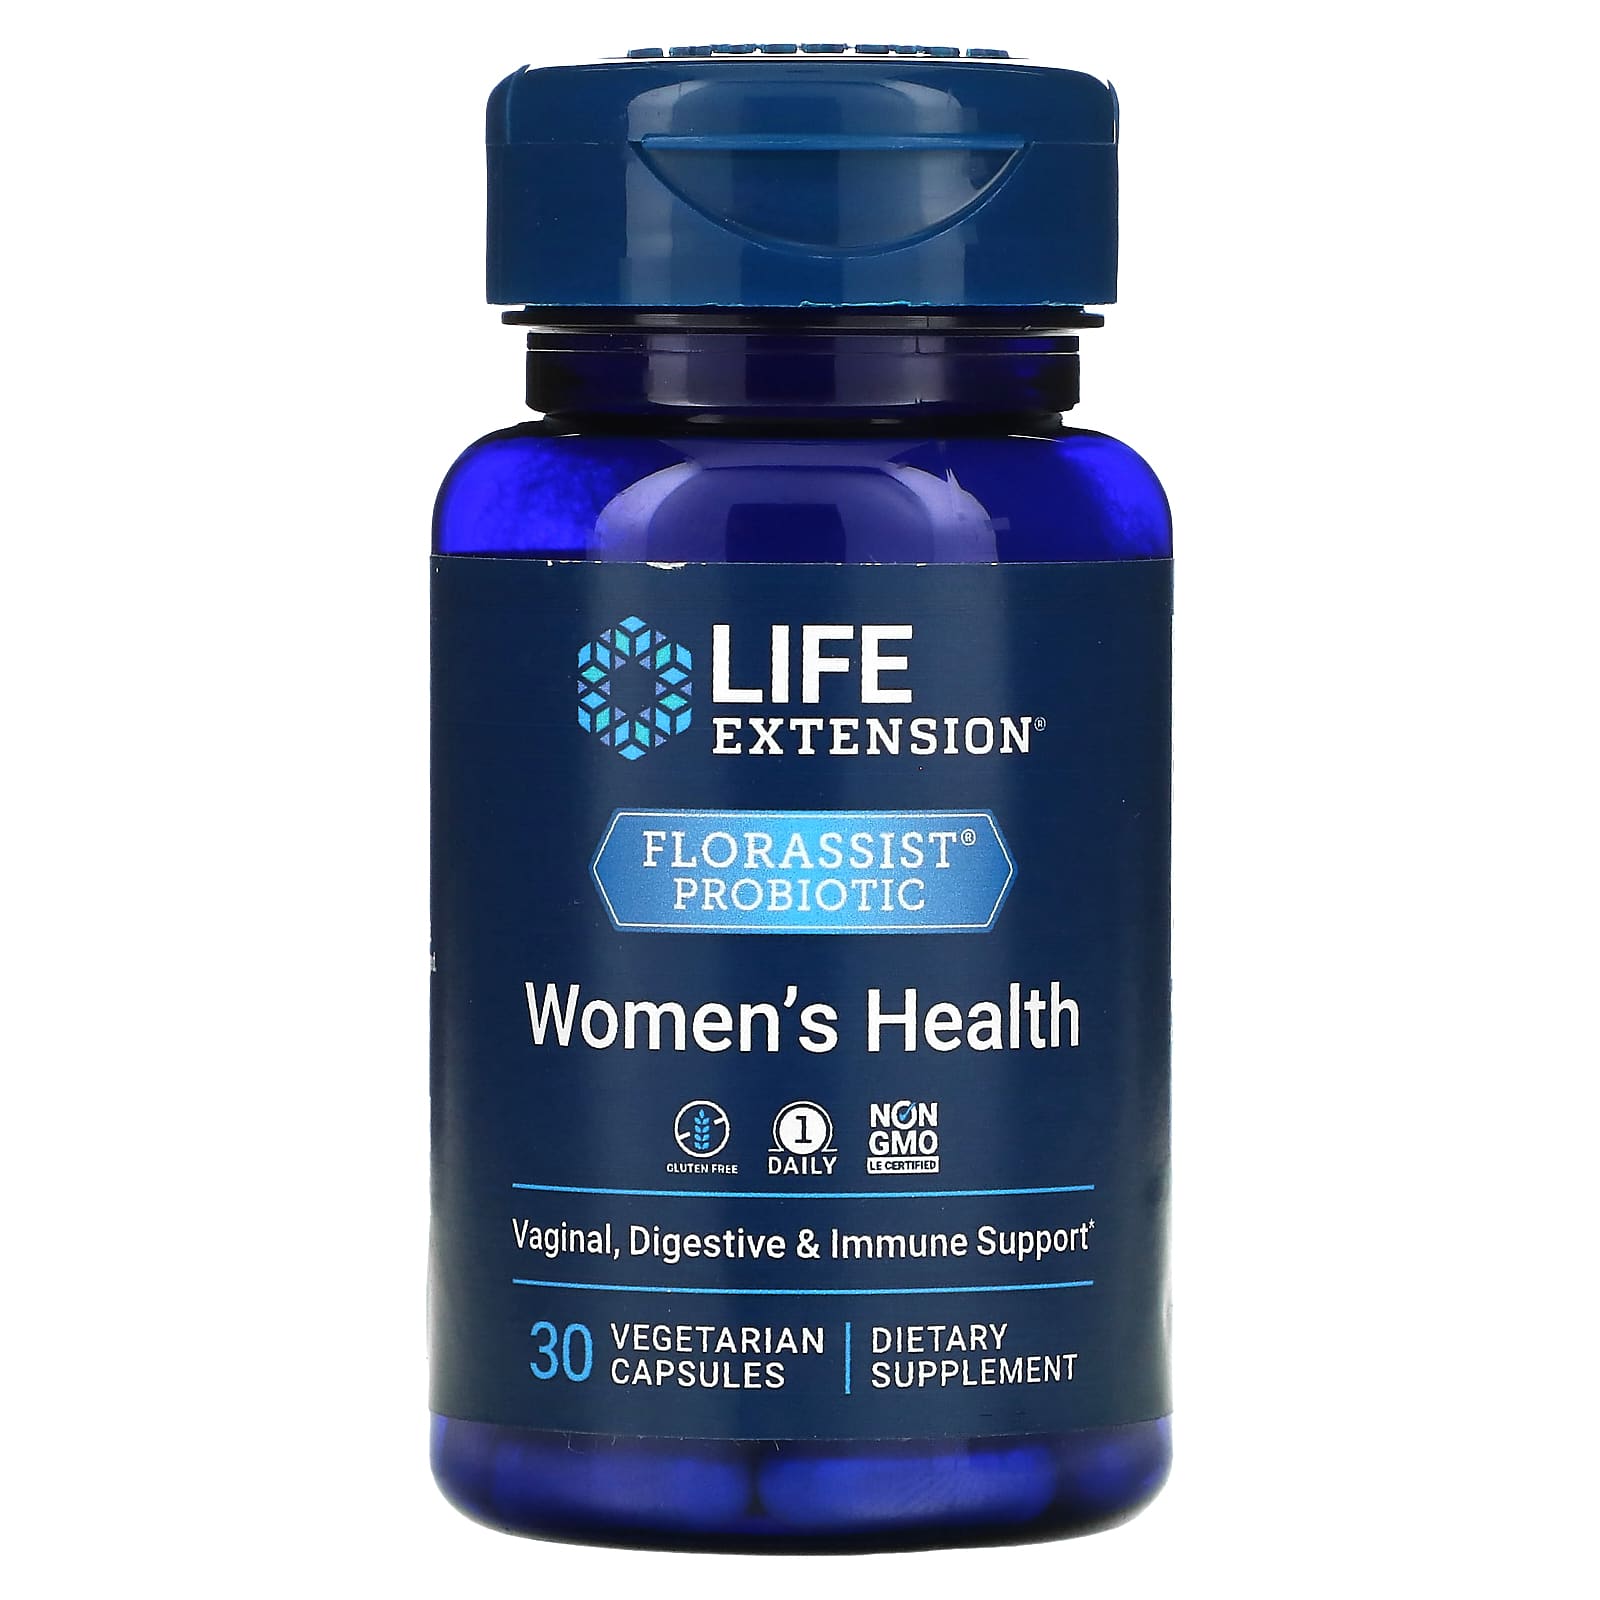 Пробиотик Life Extension для здоровья женщин, 30 вегетарианских капсул